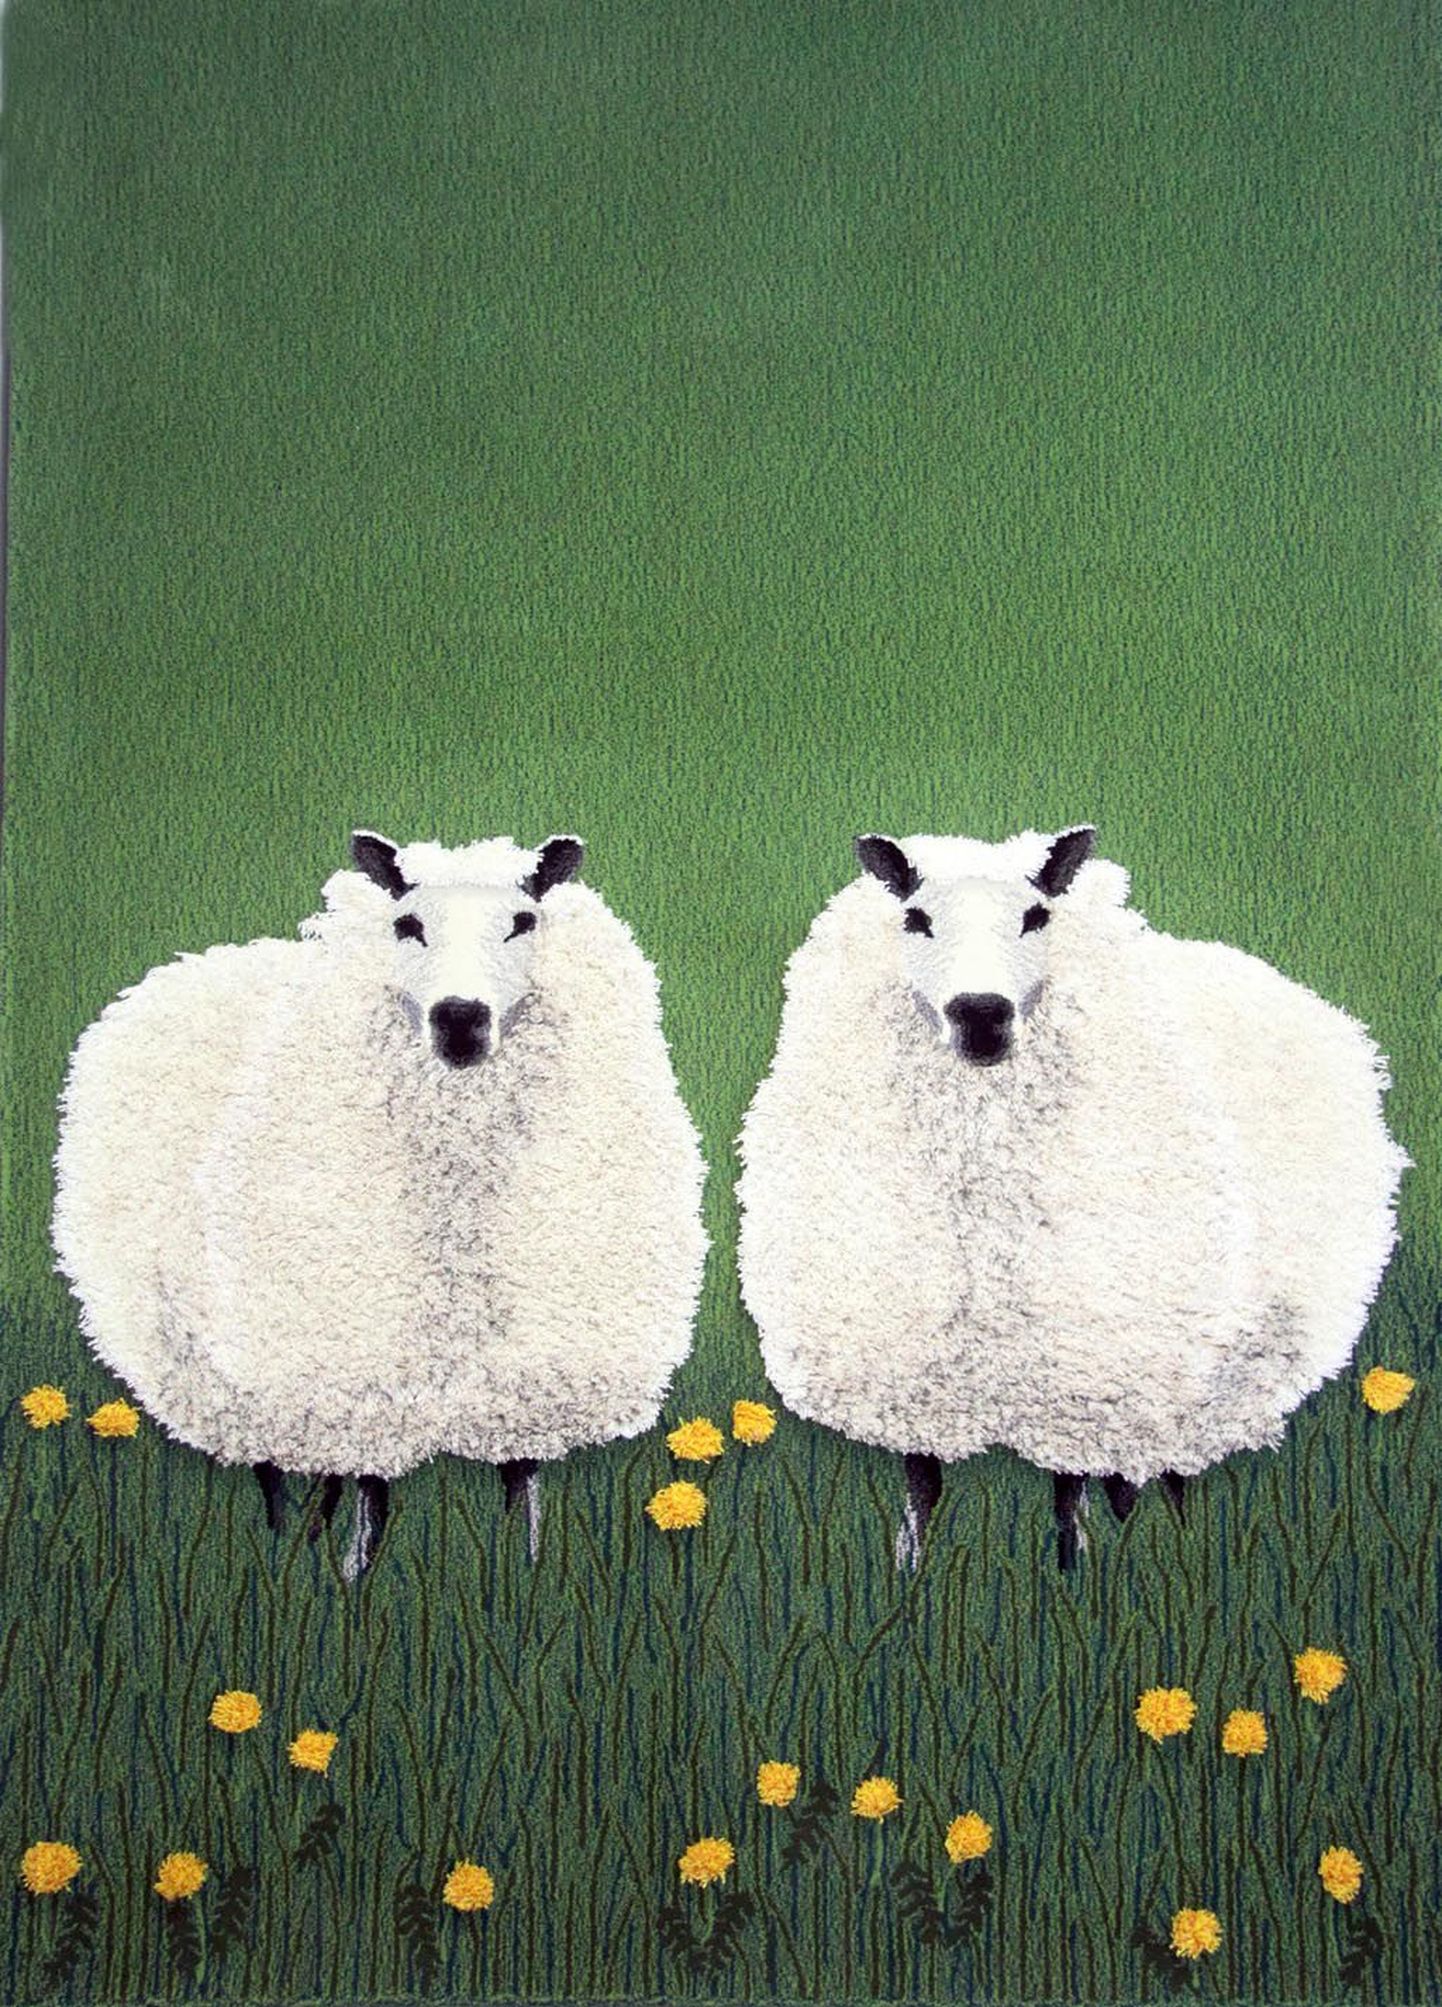 Talumajja kootud vaibal on lambad nagu maalil.